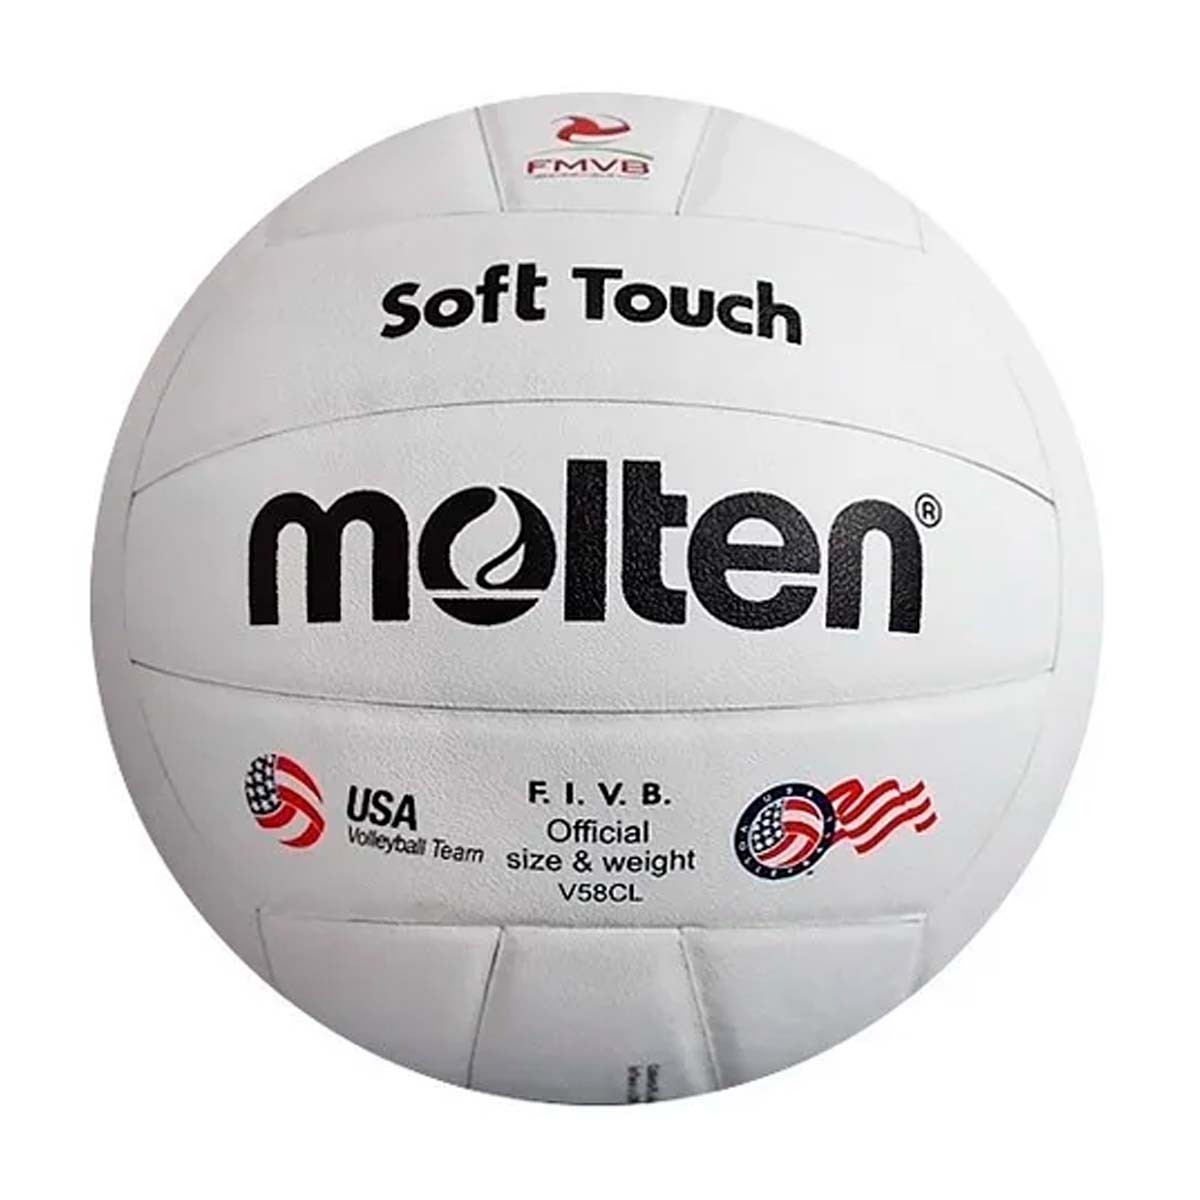 Comprar Balon De Voleibol Milan Vtt Tricolor